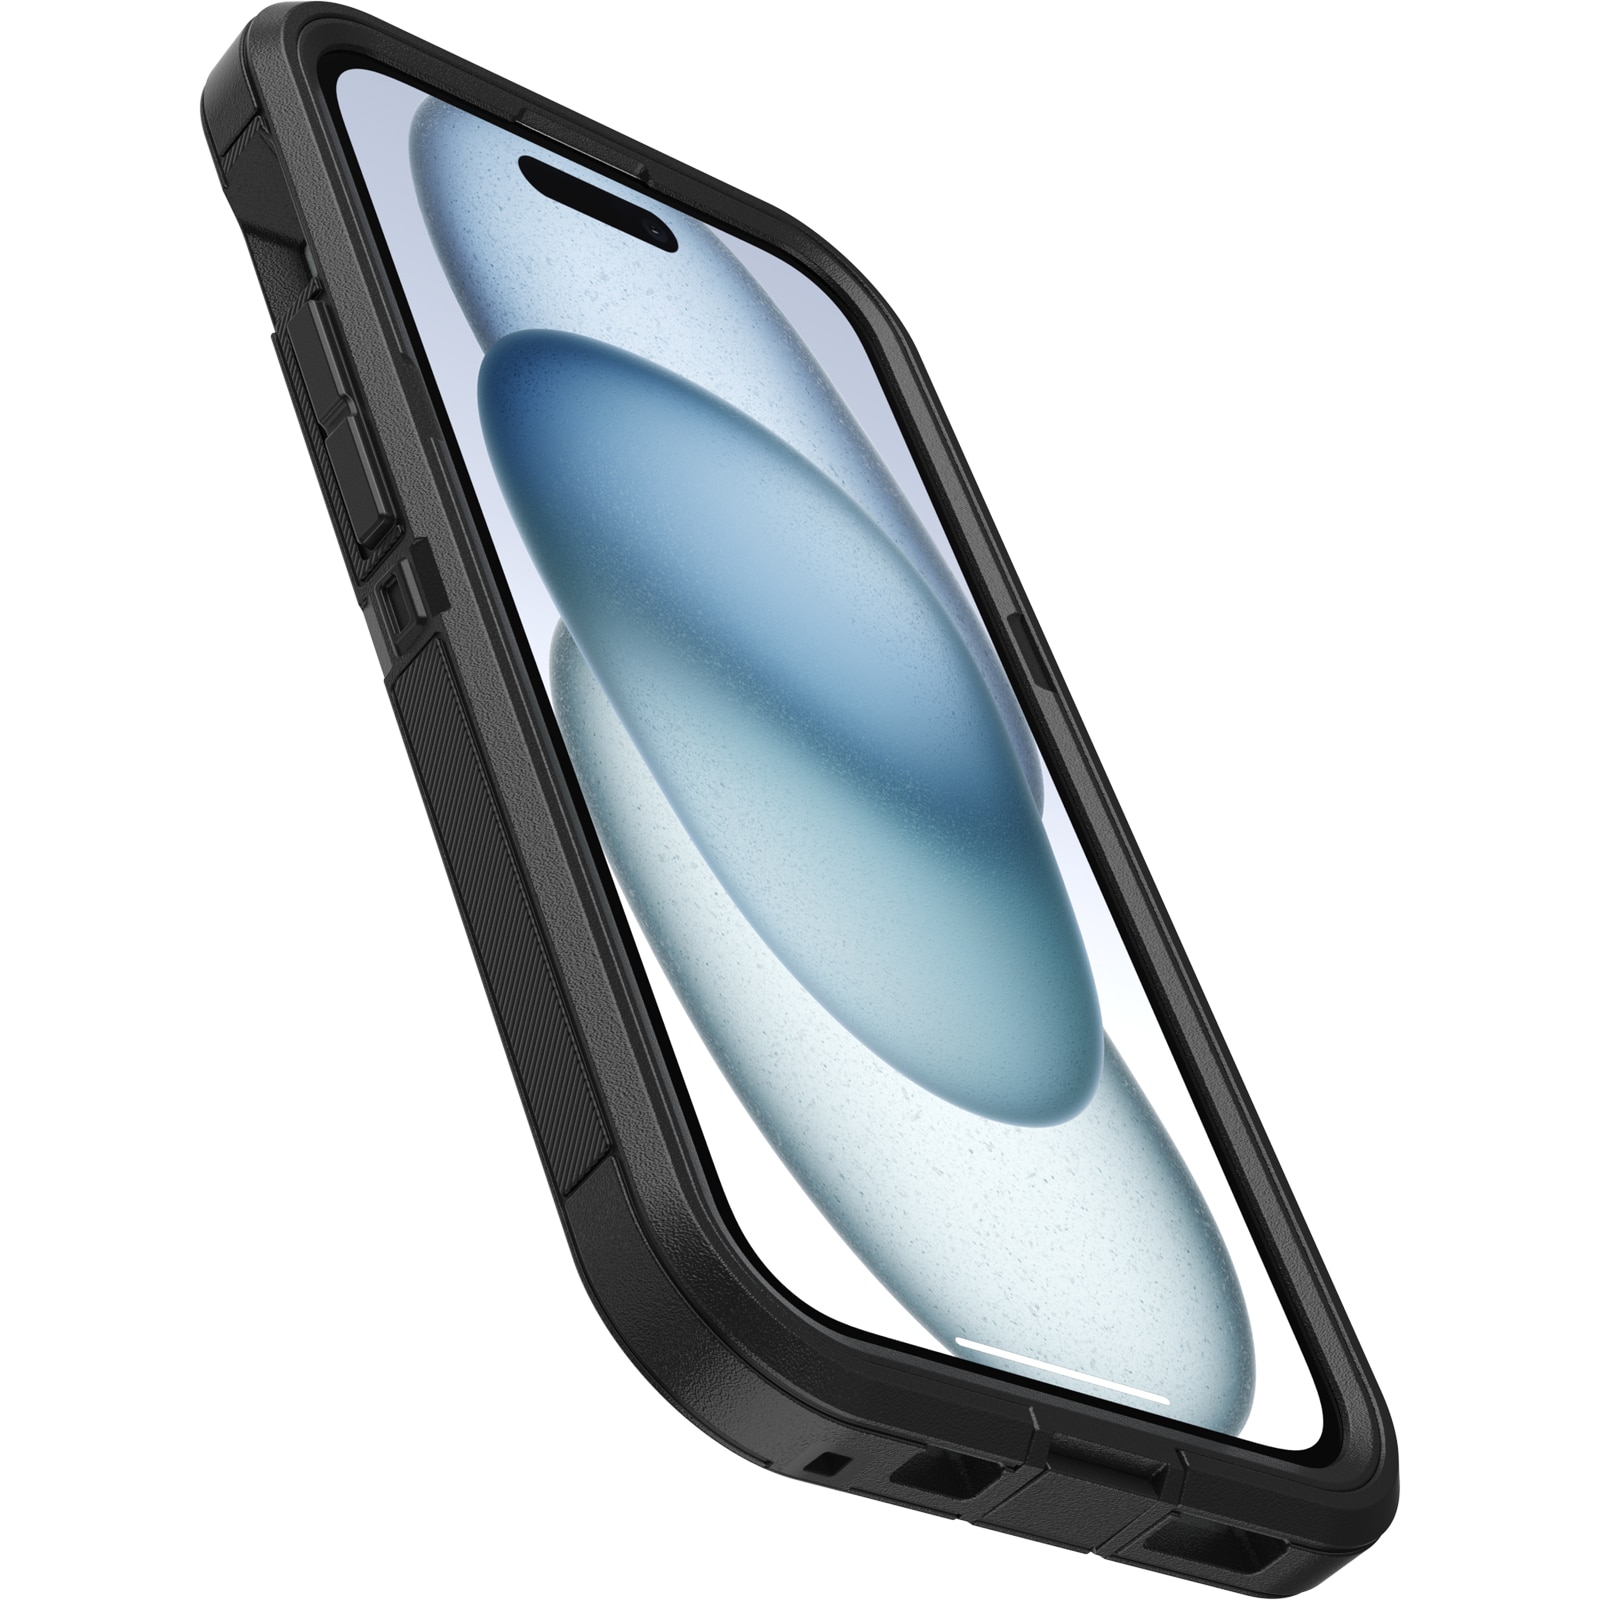 iPhone 15 Defender XT Riktigt stöttåligt MagSafe-skal, svart